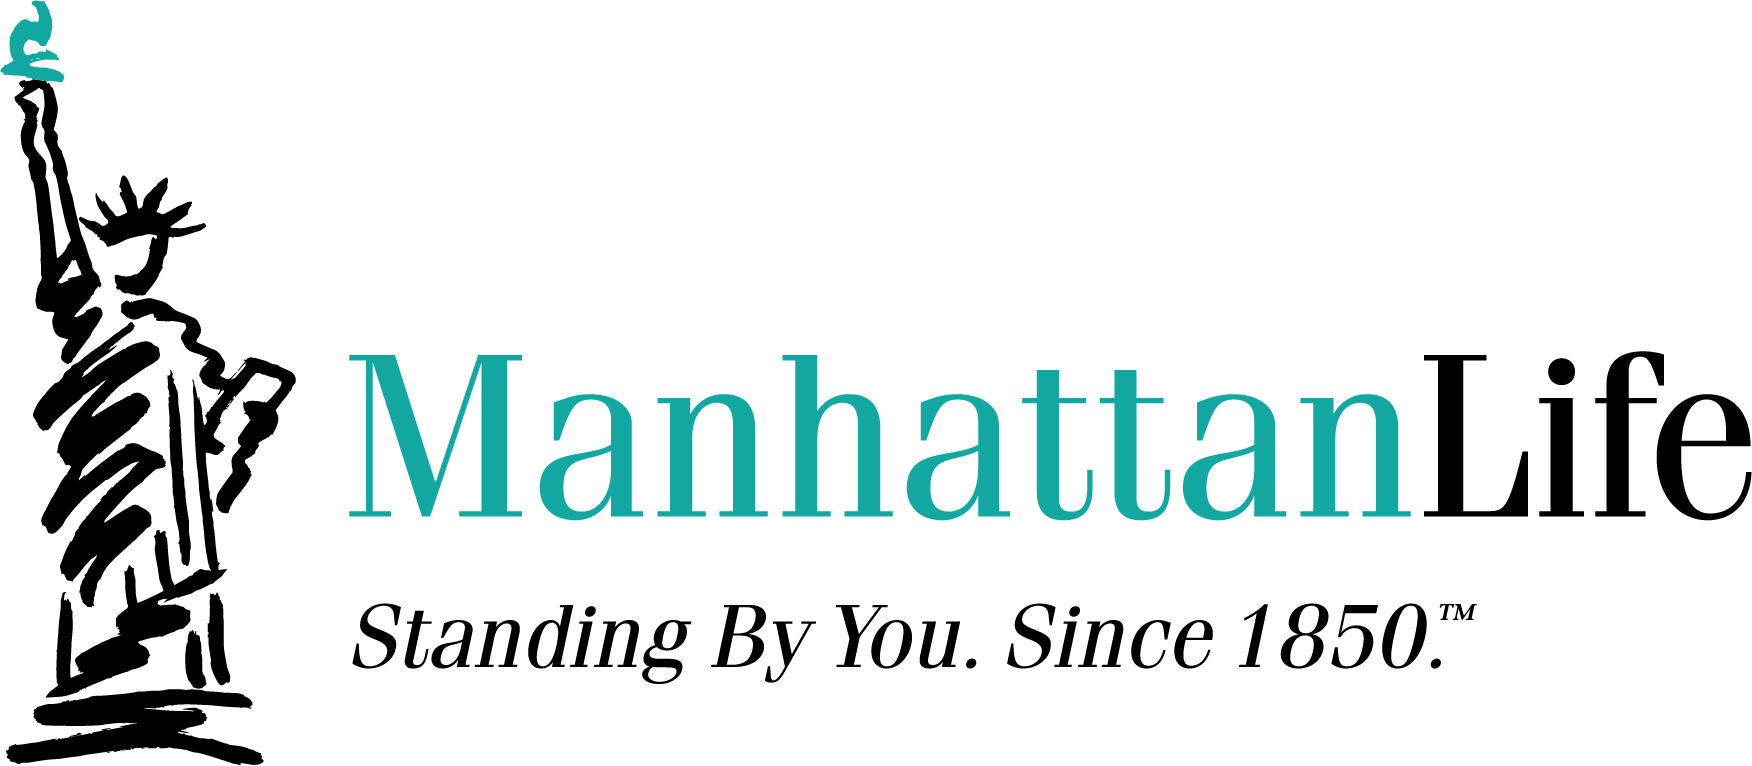 ManhanttanLife_Logo.jpg